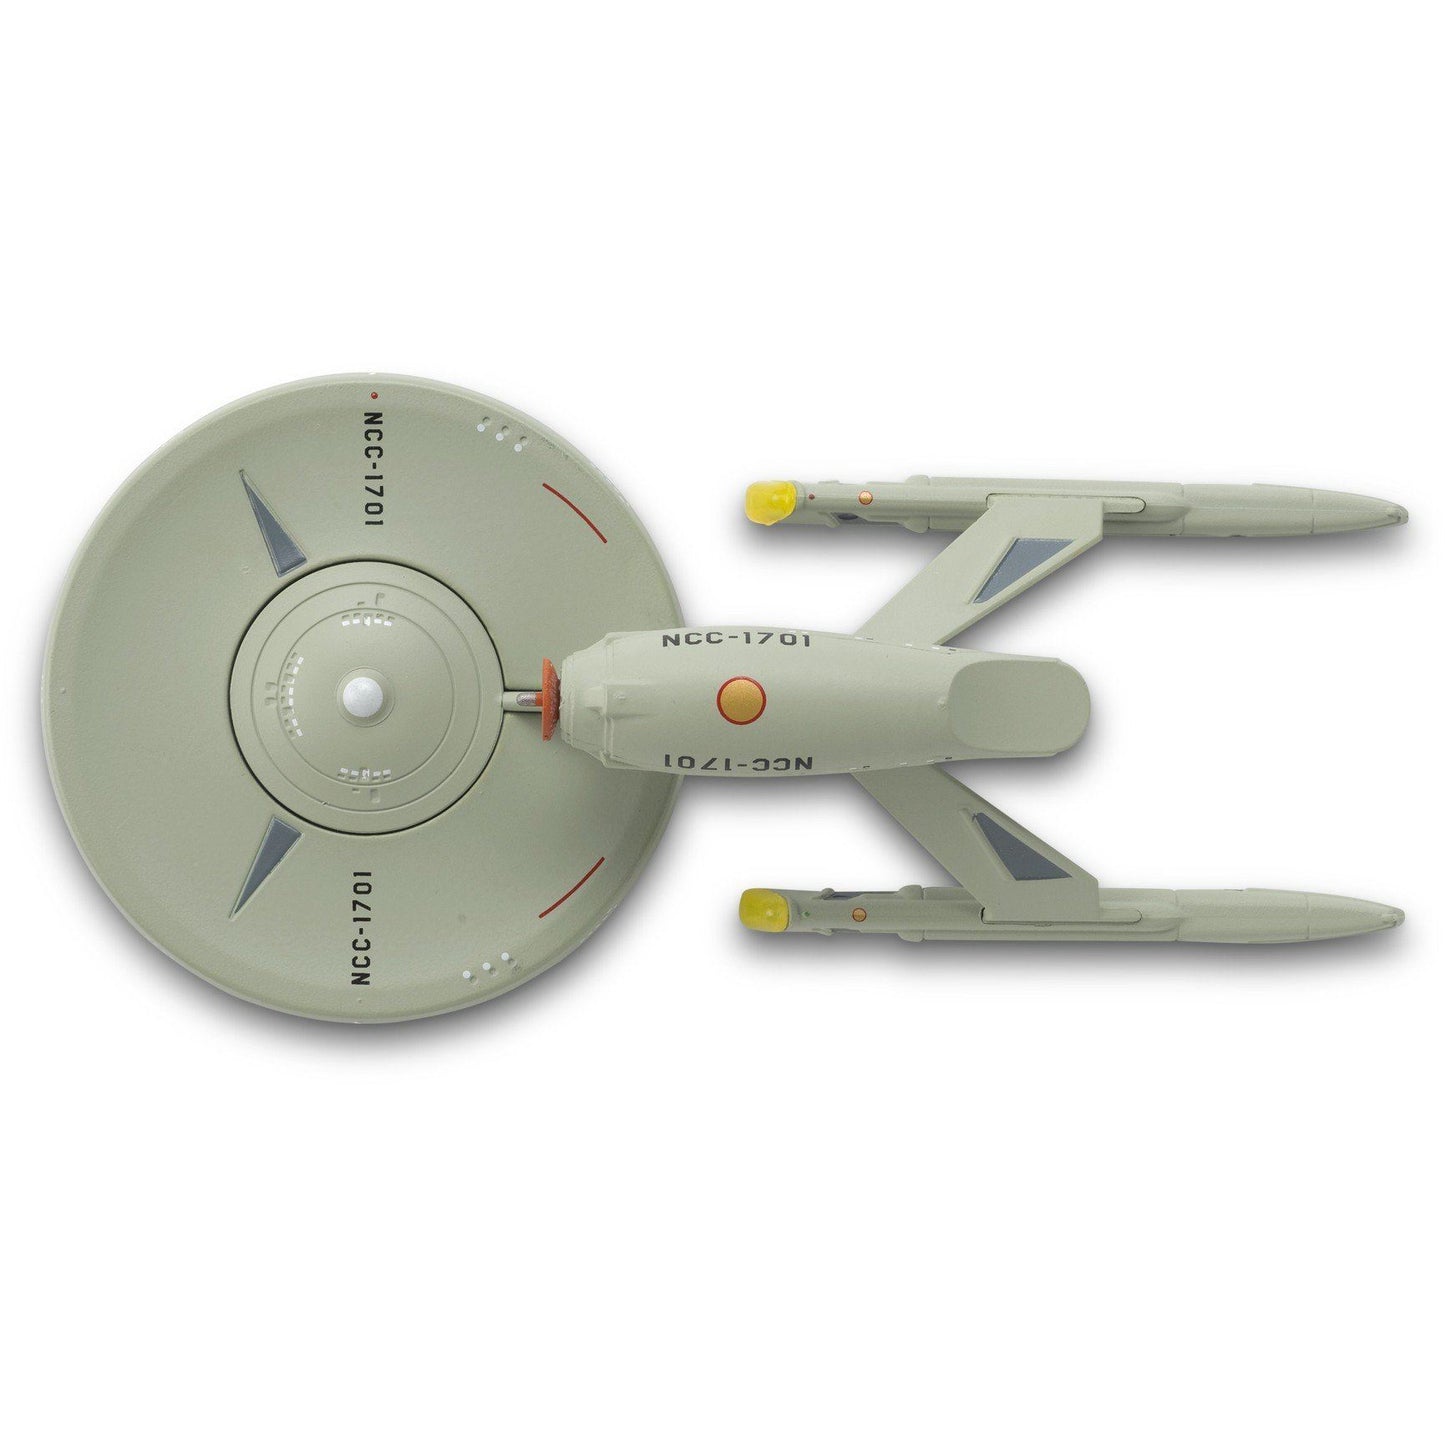 #08 U.S.S. Enterprise NCC-1701 (Phase II concept) 2 Anniversary Model Die Cast Ship BONUS ISSUE (Eaglemoss / Star Trek)